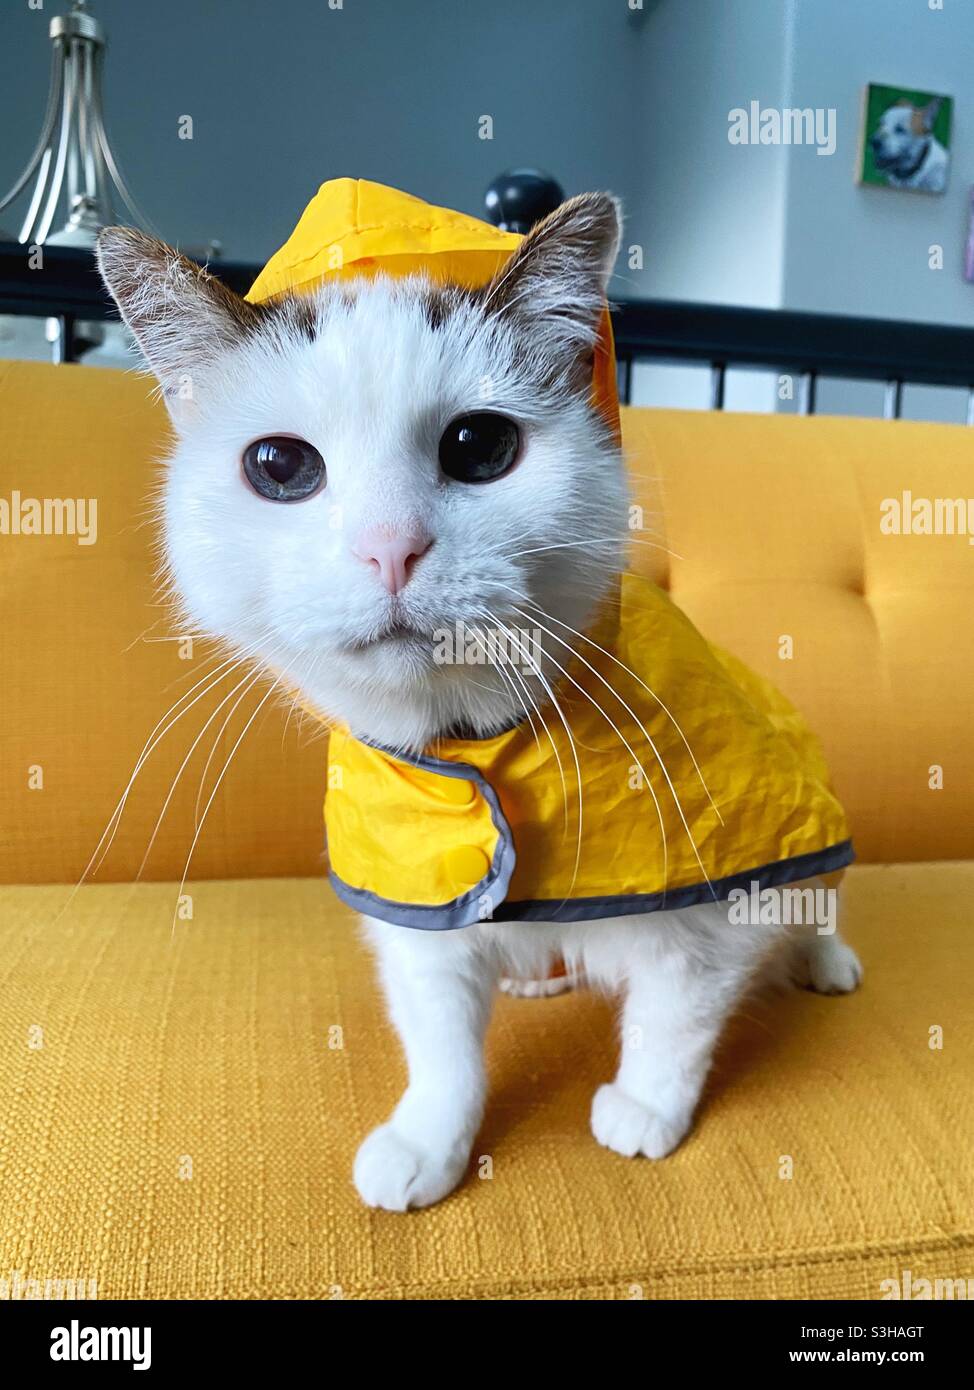 Un chat portant un imperméable jaune. Banque D'Images